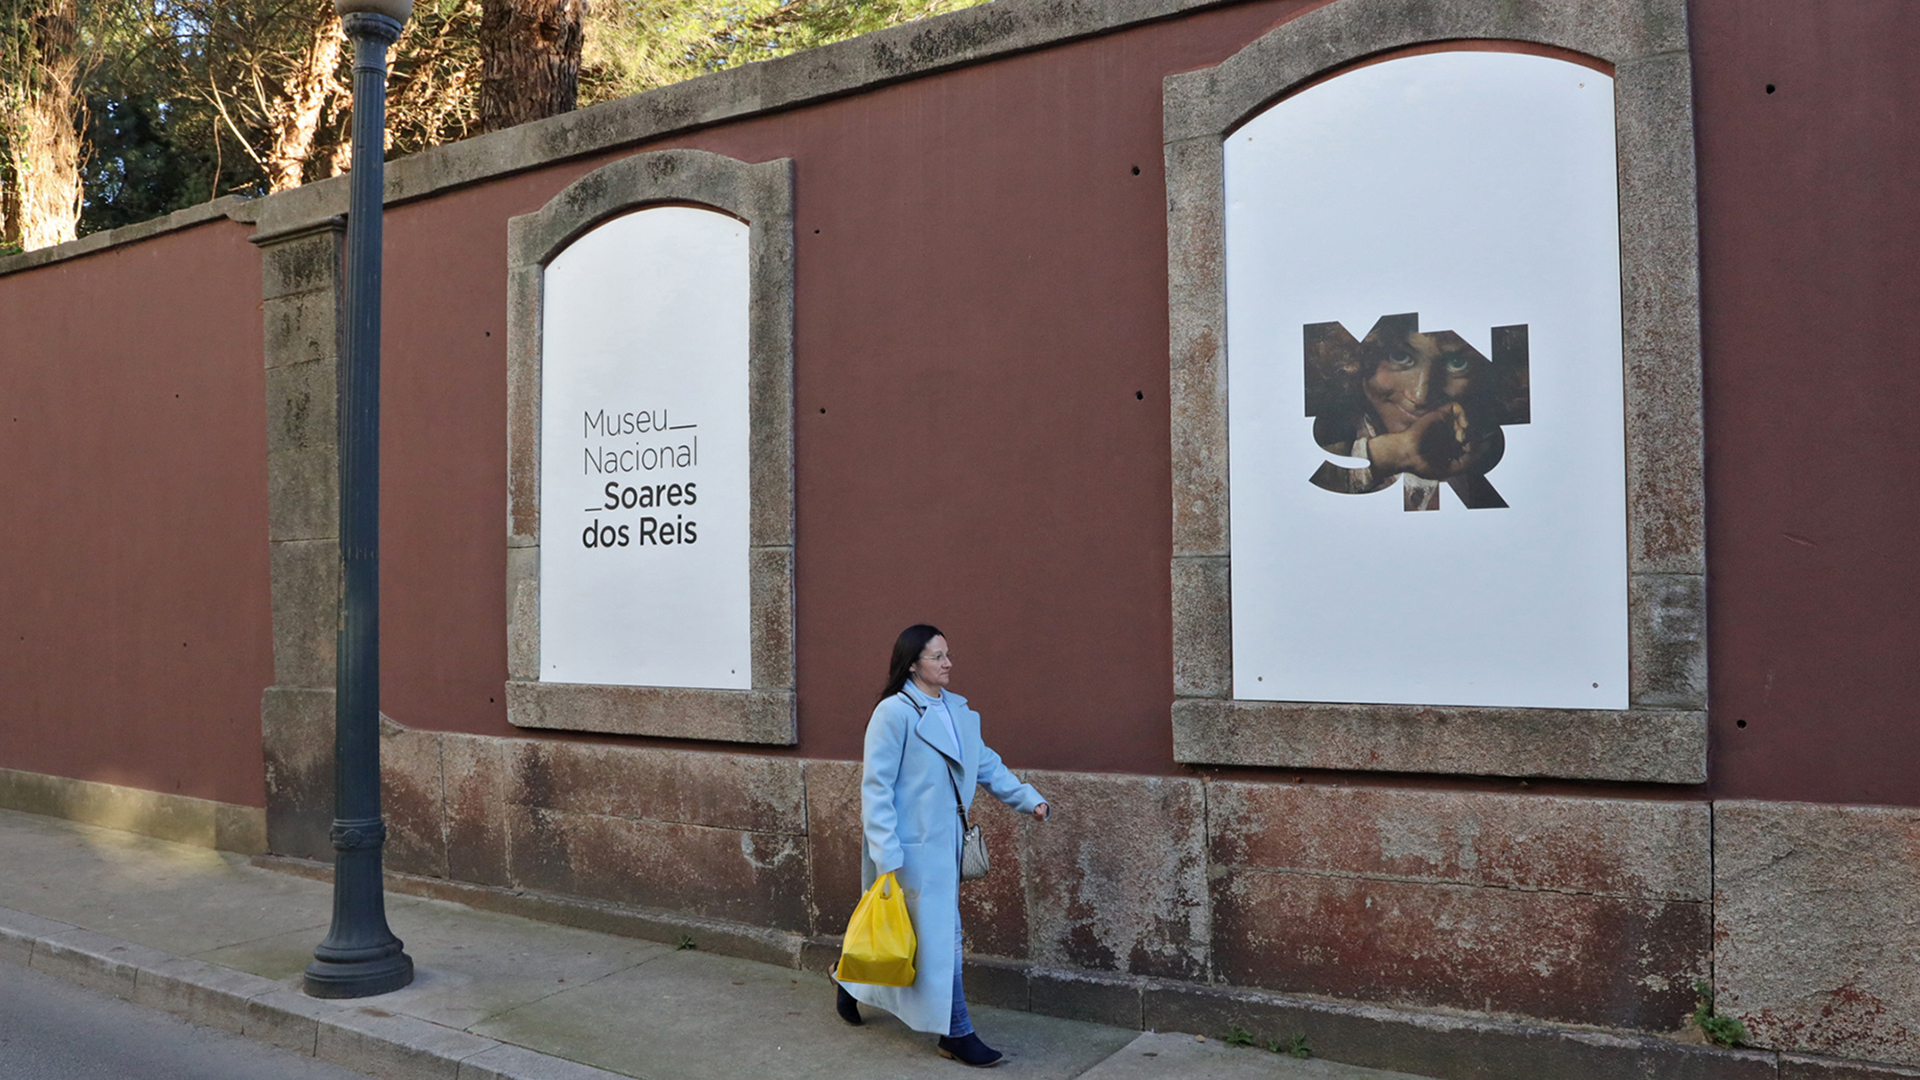 Fachada lateral do Museu Nacional Soares dos Reis